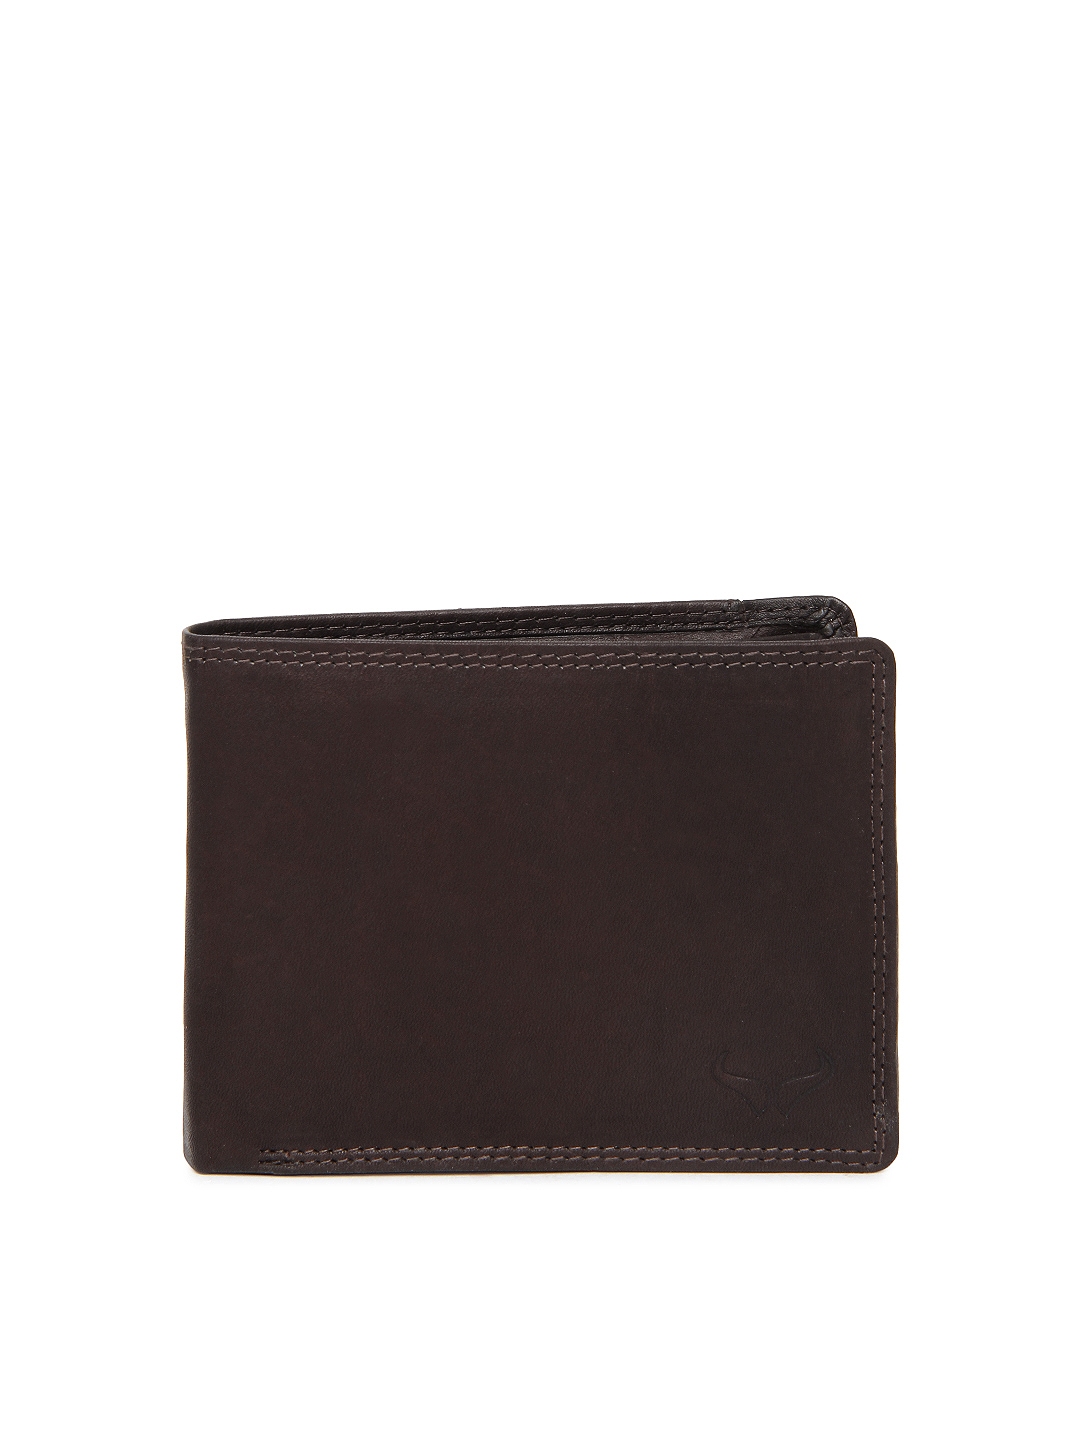 Buy Bern Men Brown Leather Wallet - Wallets for Men 311377 | Myntra